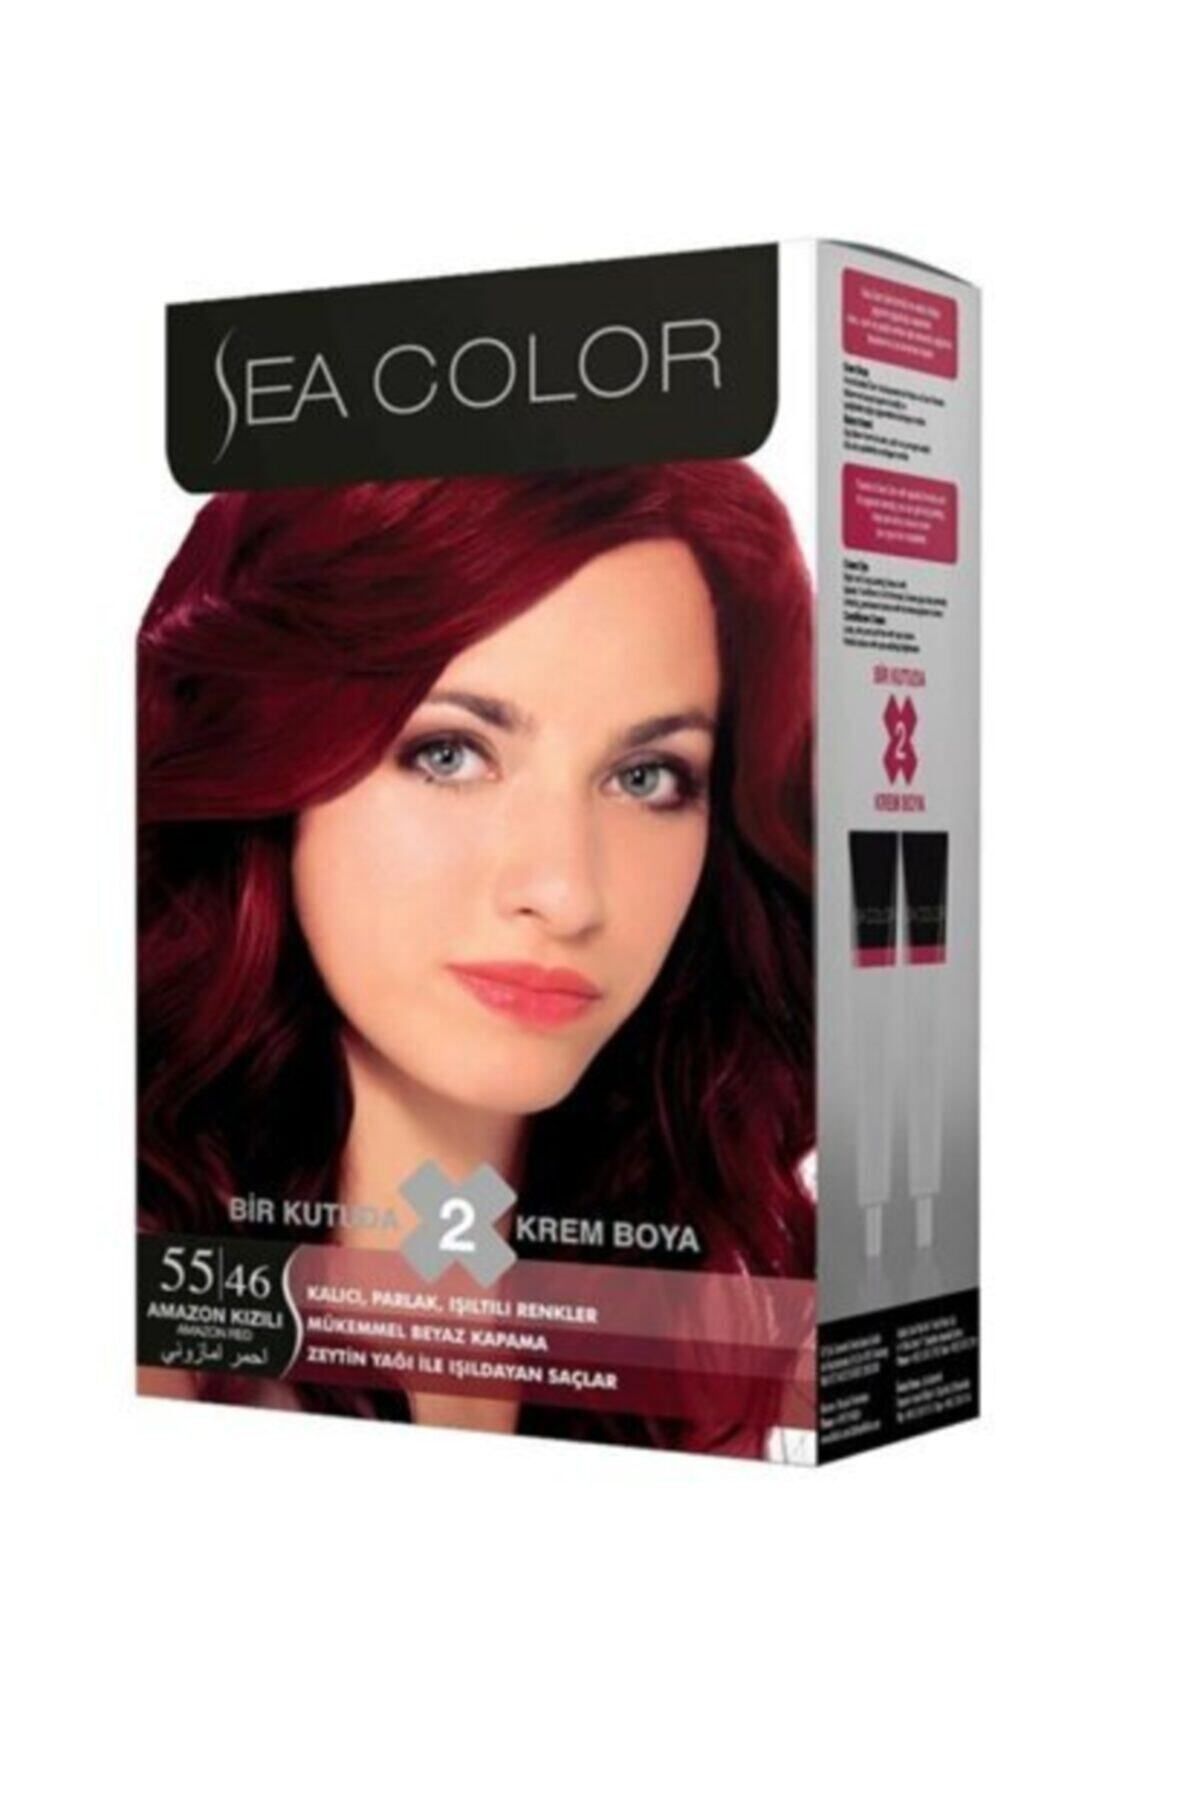 Sea Color Unisex Amozan Kızılı Saç Boyası 55,46